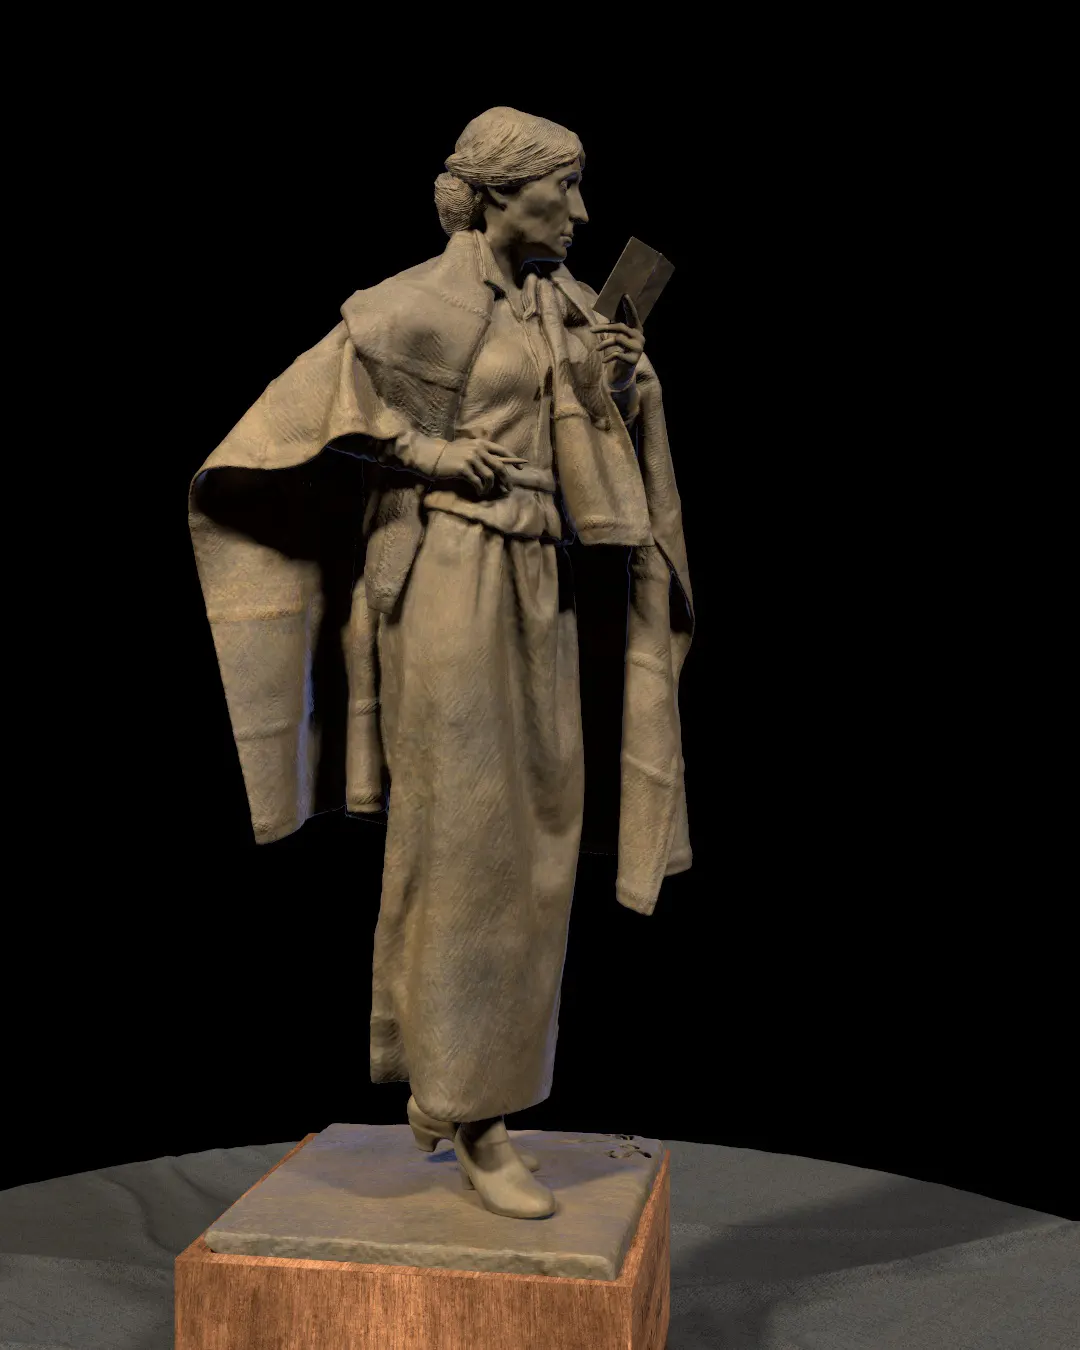 Virginia-Woolf-statue/Rendering-of-Virginia-Woolf-statue-modeled-by-Emil-Sole-9.webp